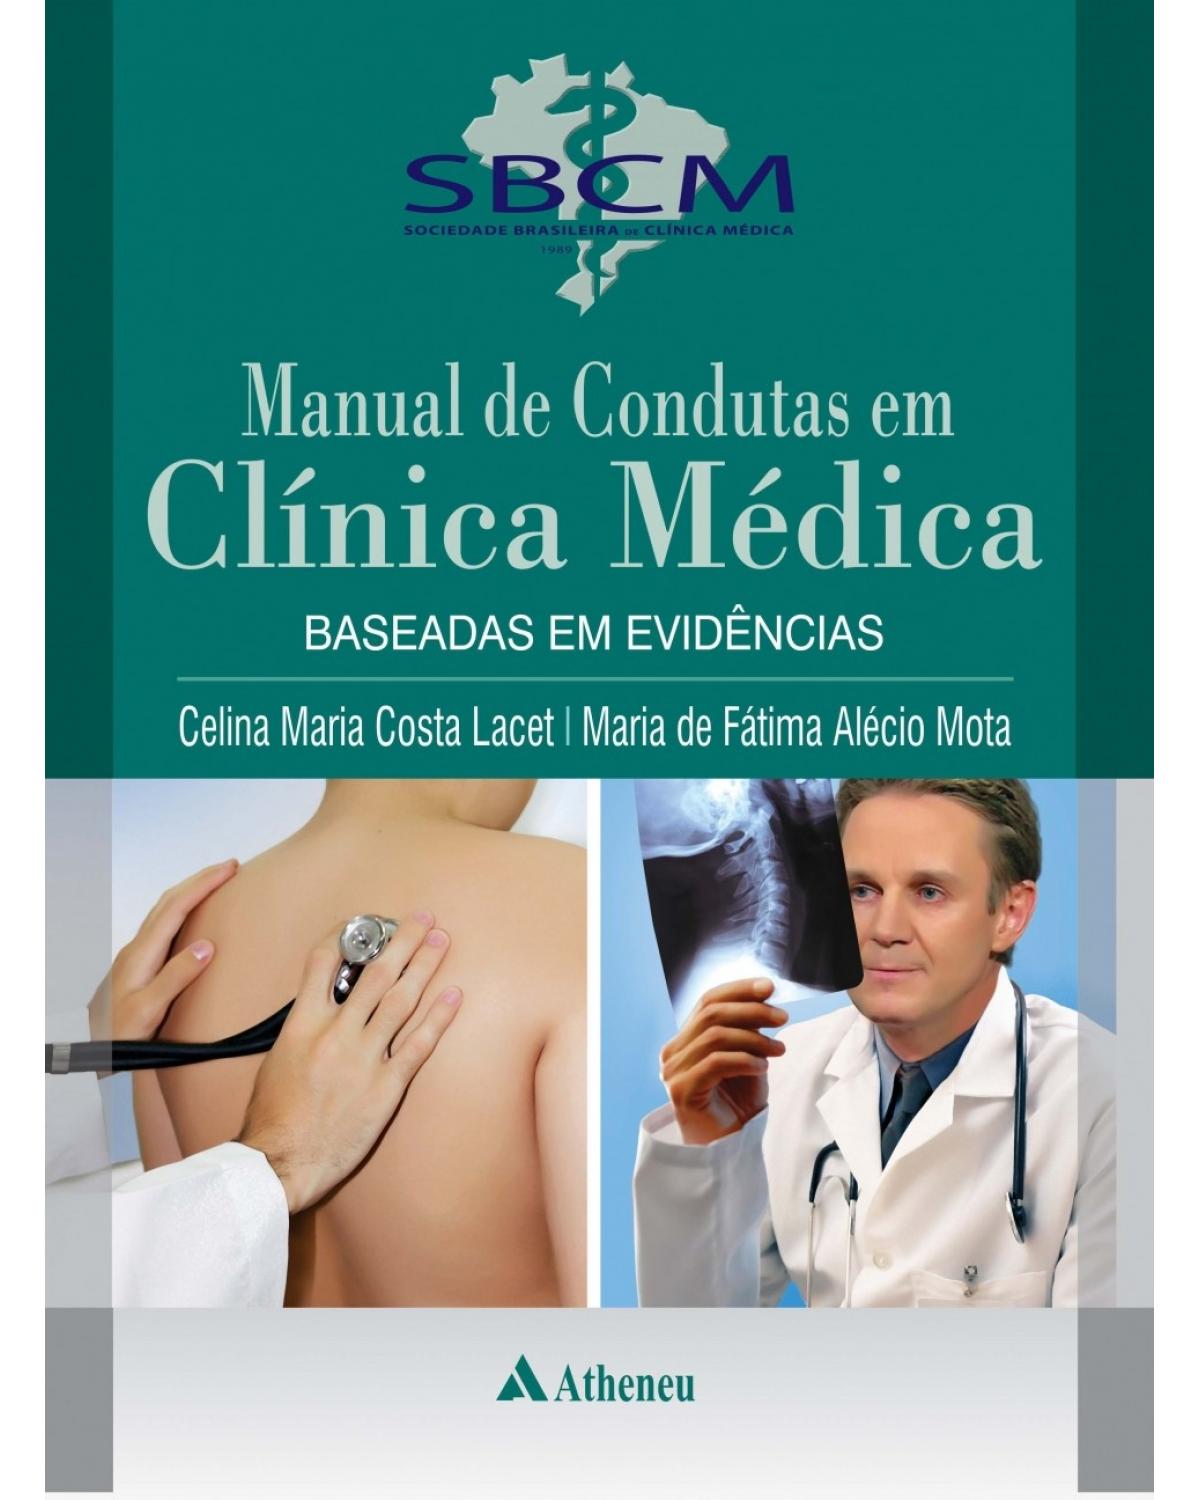 Manual de condutas em clínica médica - Baseadas em evidências - 1ª Edição | 2016